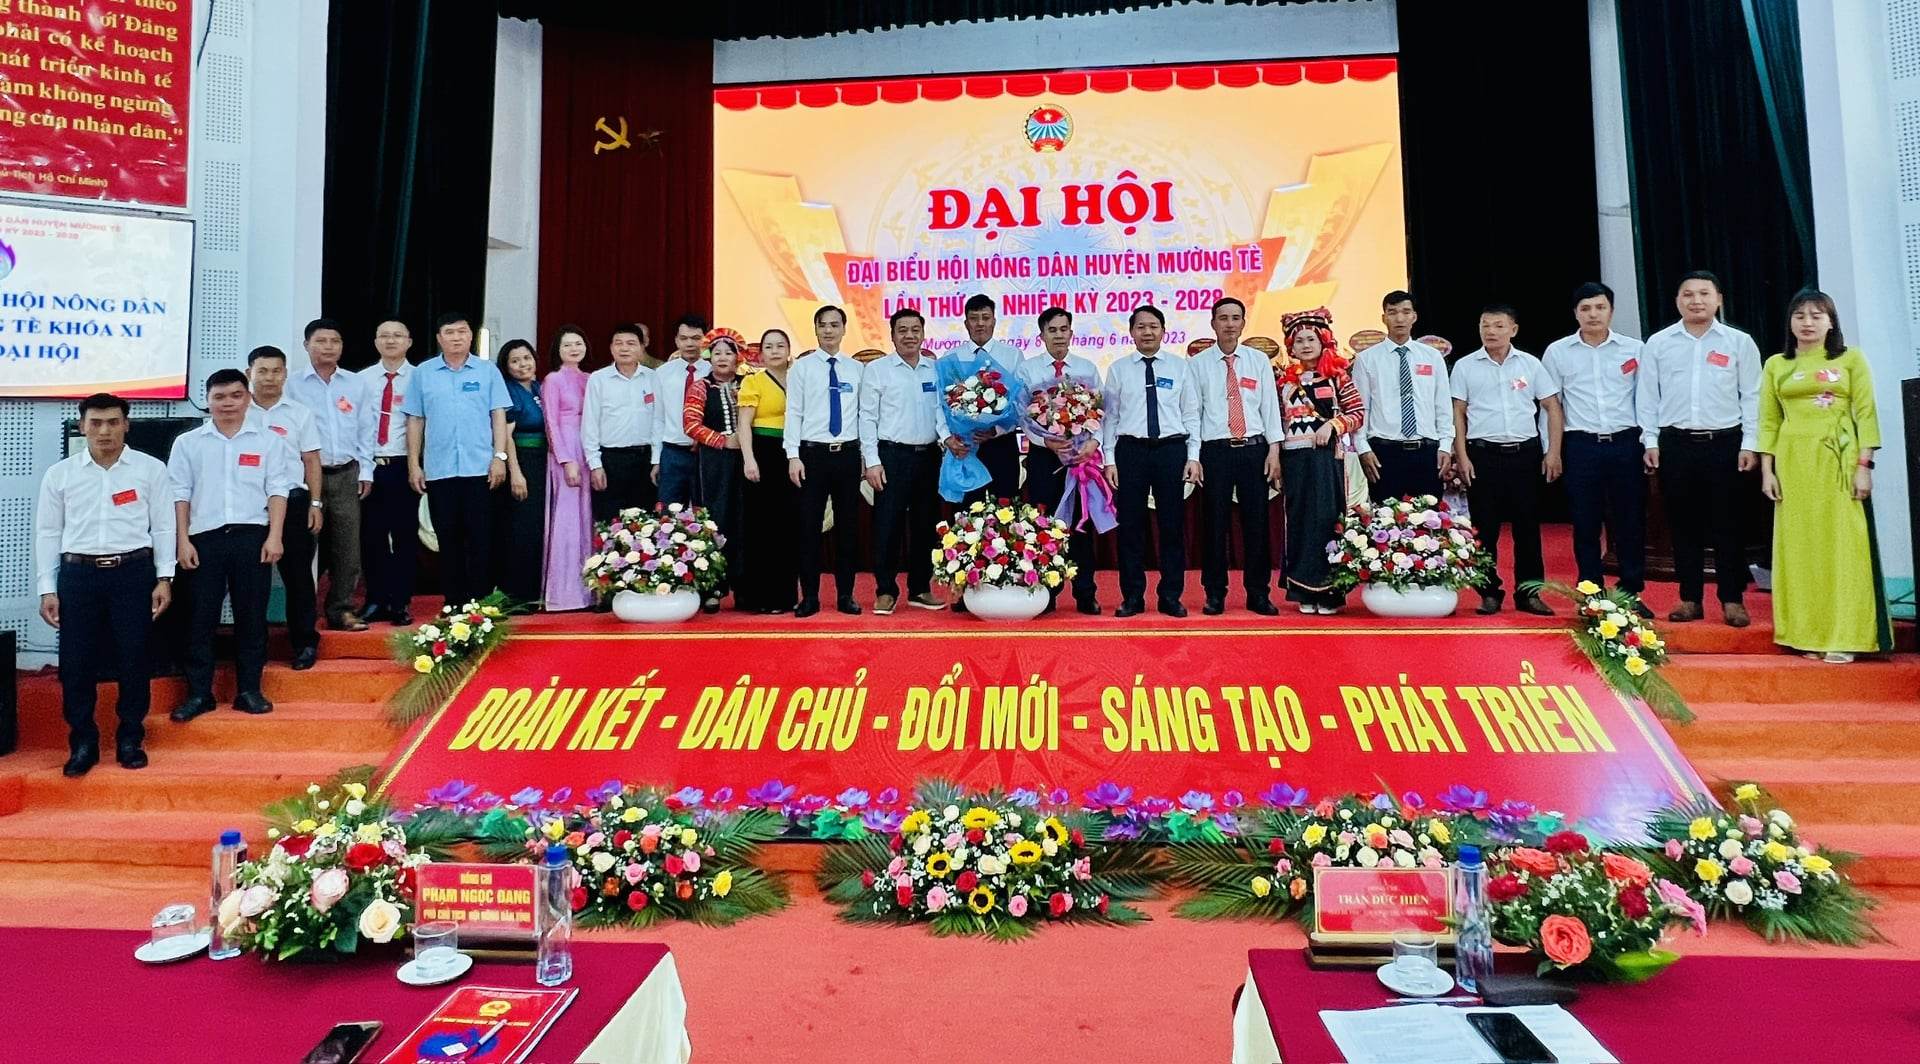 Đại hội đại biểu Hội Nông dân huyện Mường Tè lần XI: Ông Tống Văn Thi được bầu giữ chức Chủ tịch HND huyện - Ảnh 1.